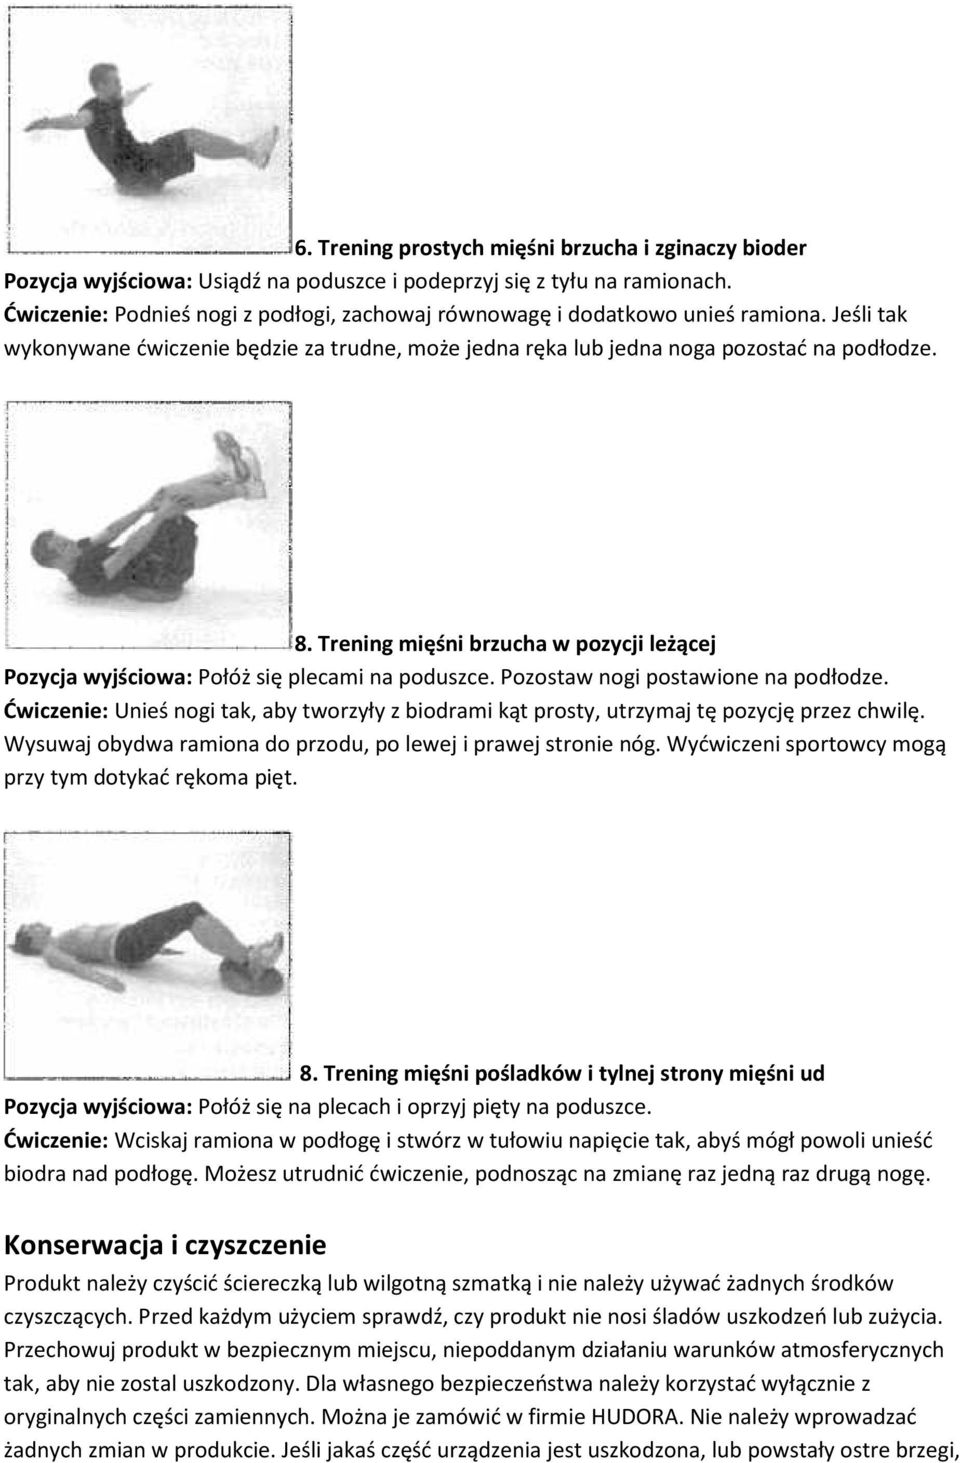 Trening mięśni brzucha w pozycji leżącej Pozycja wyjściowa: Połóż się plecami na poduszce. Pozostaw nogi postawione na podłodze.